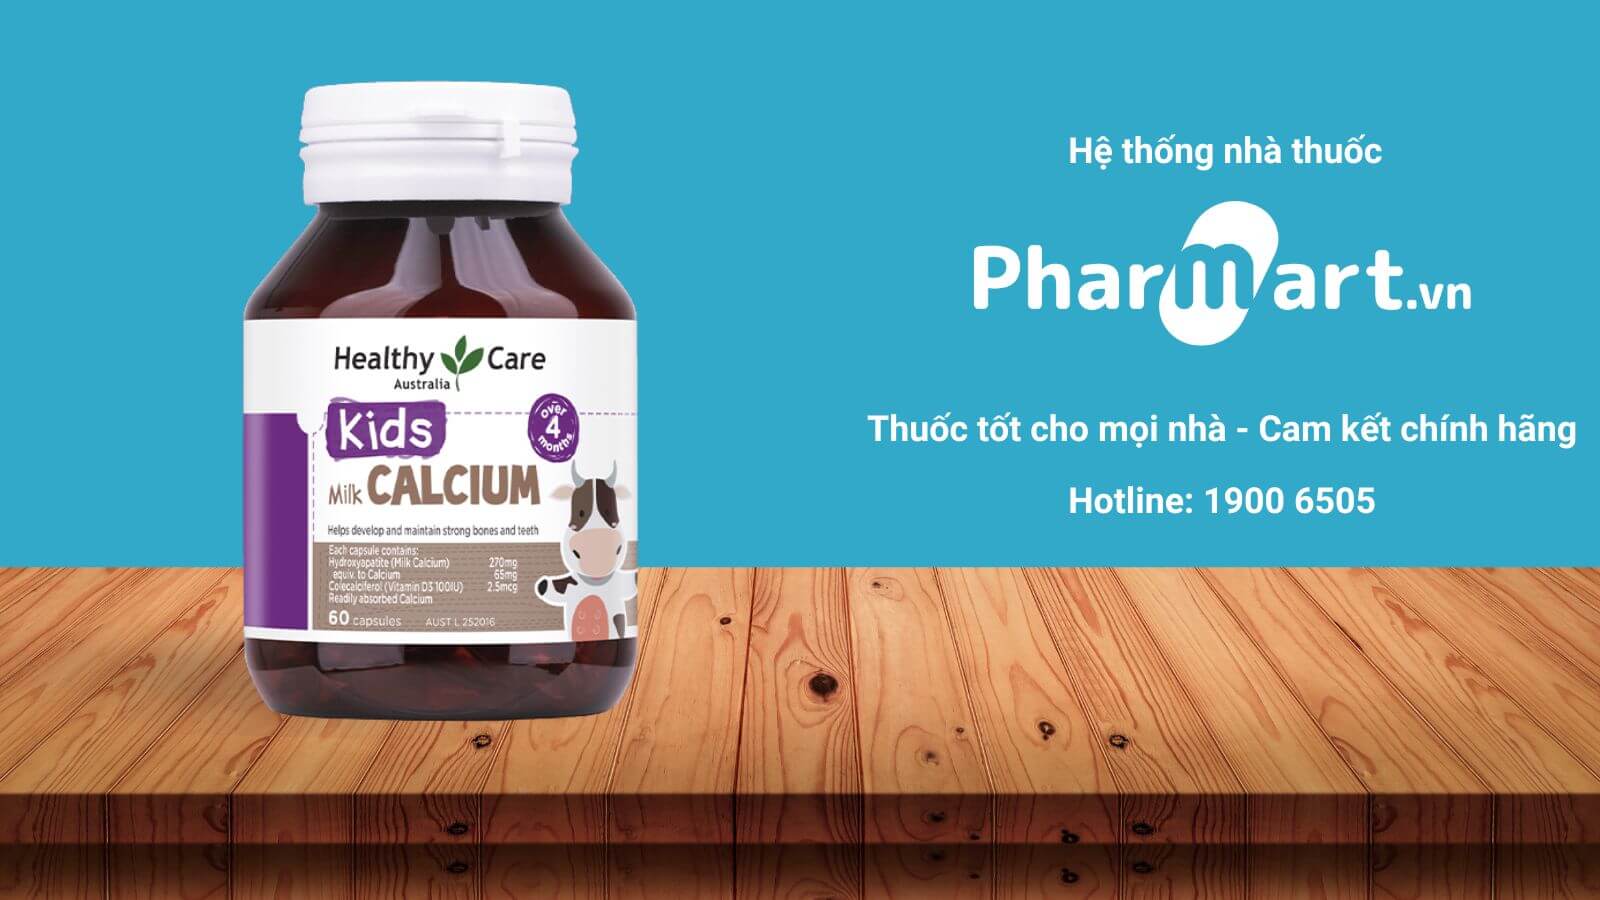 Mua canxi healthy care chính hãng tại Pharmart.vn